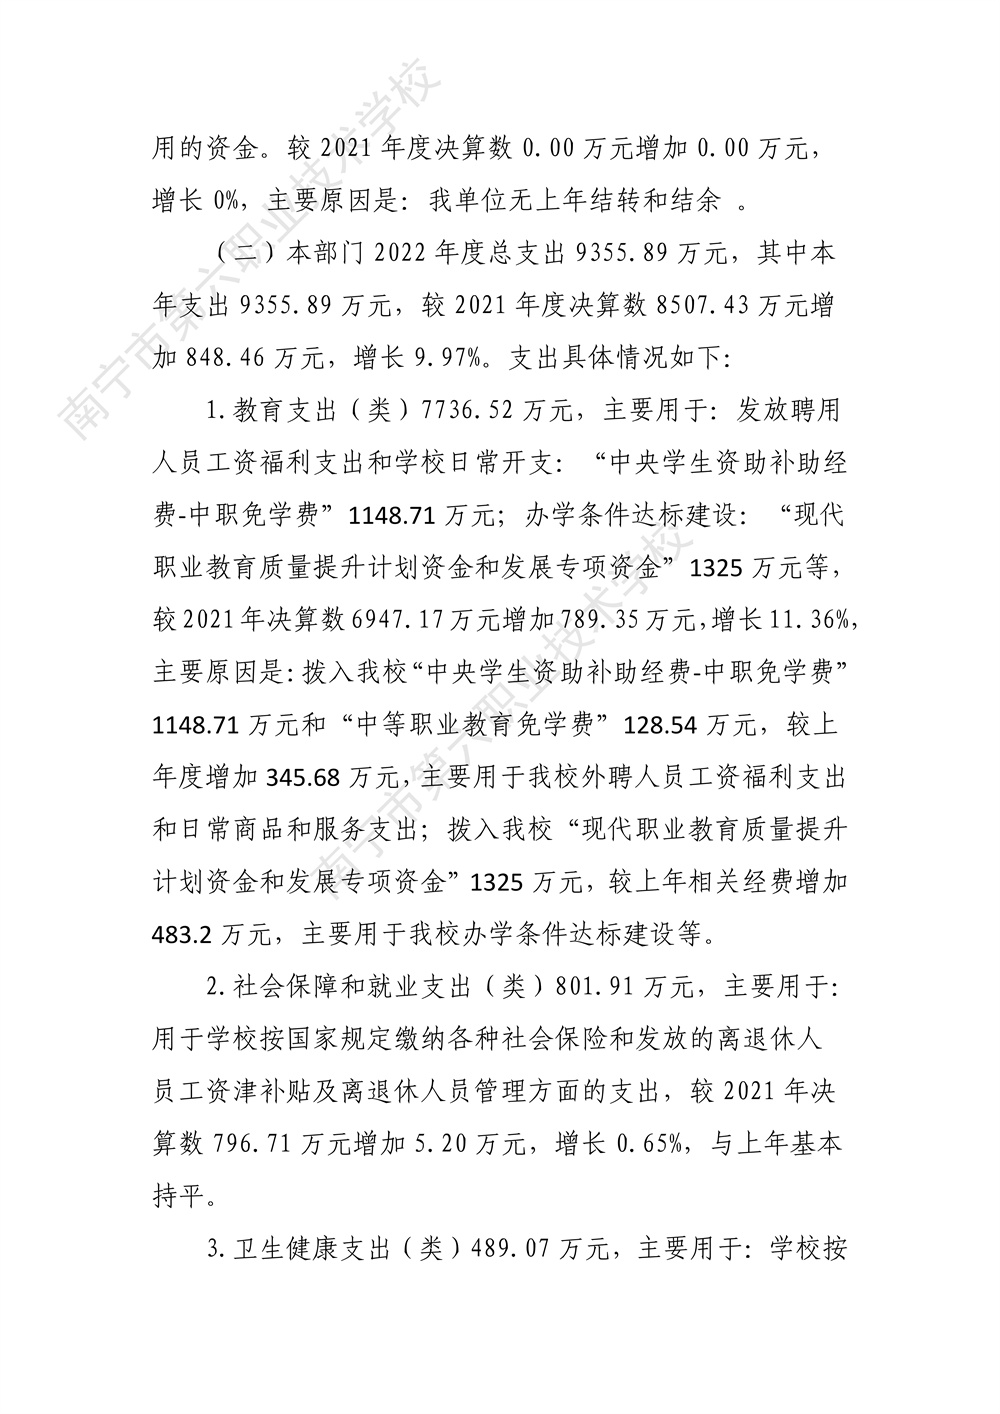 南宁市第六职业技术学校2022年度部门决算公开（终版）_25.jpg